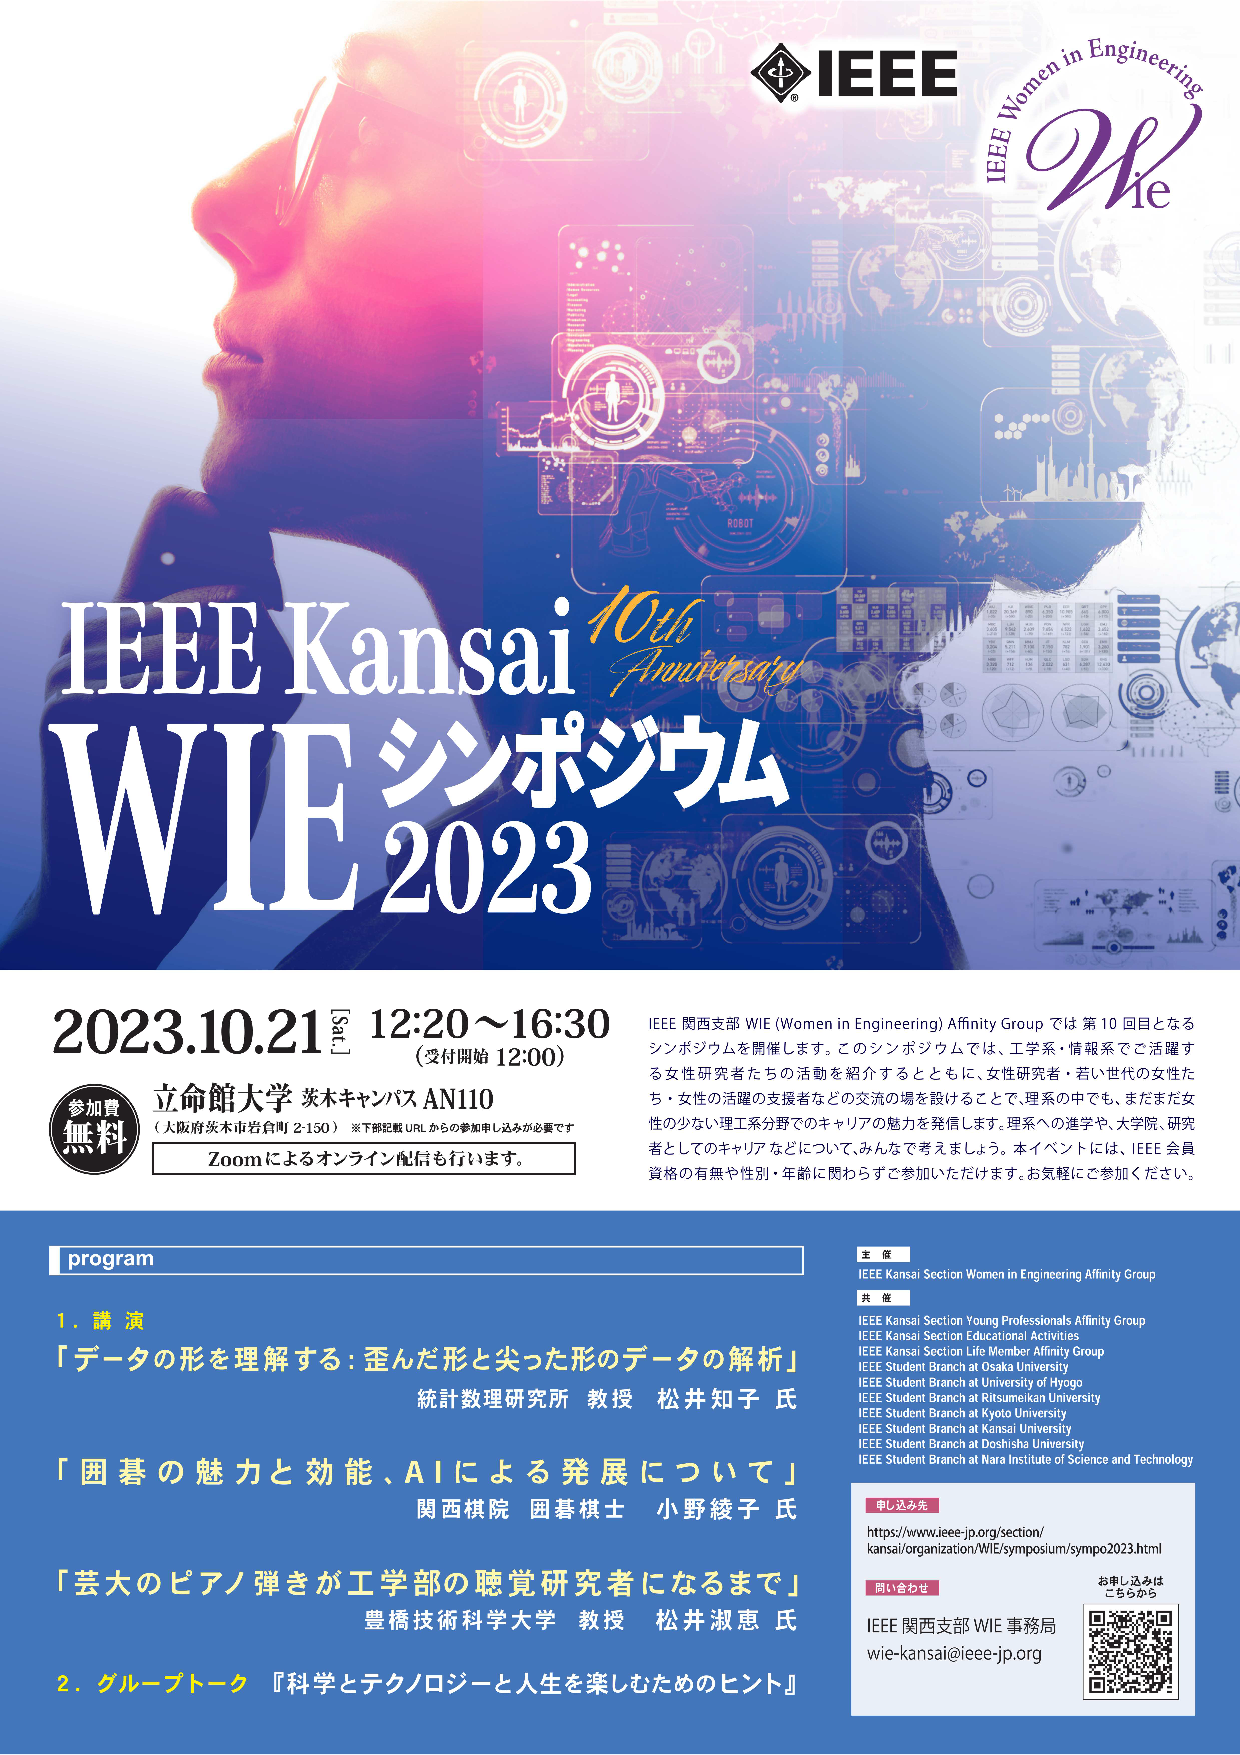 ieee_kansai_wie_symposium2023